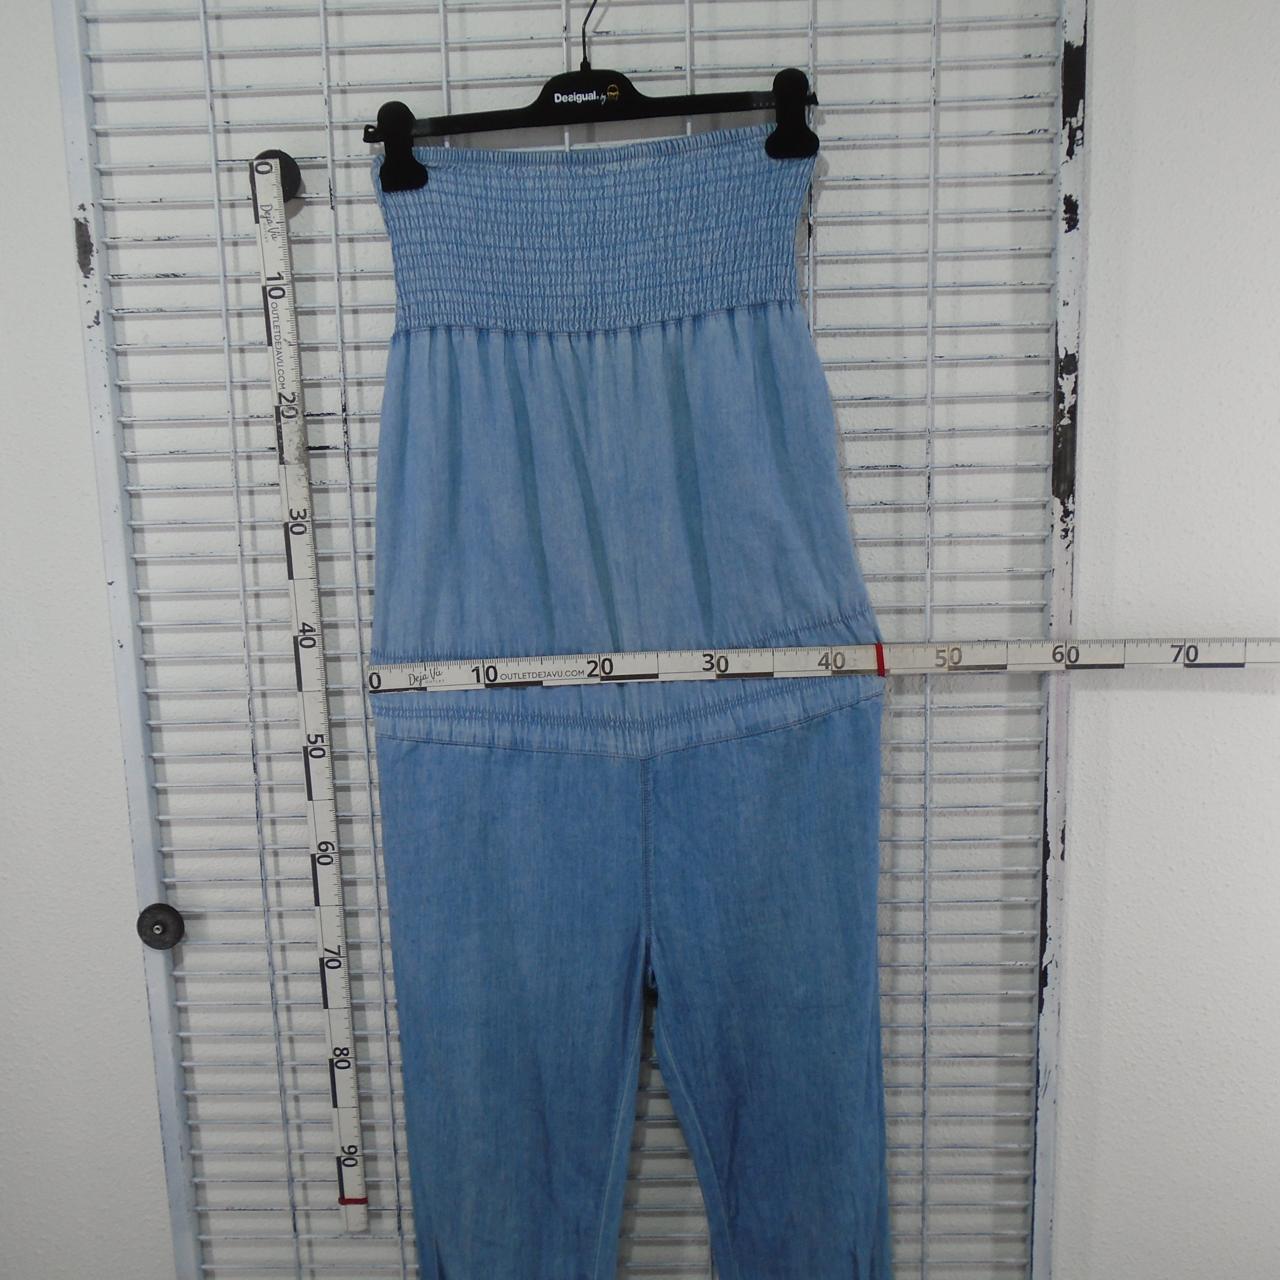 Pantalones Mujer Bershka. Azul. M. Usado. Bien